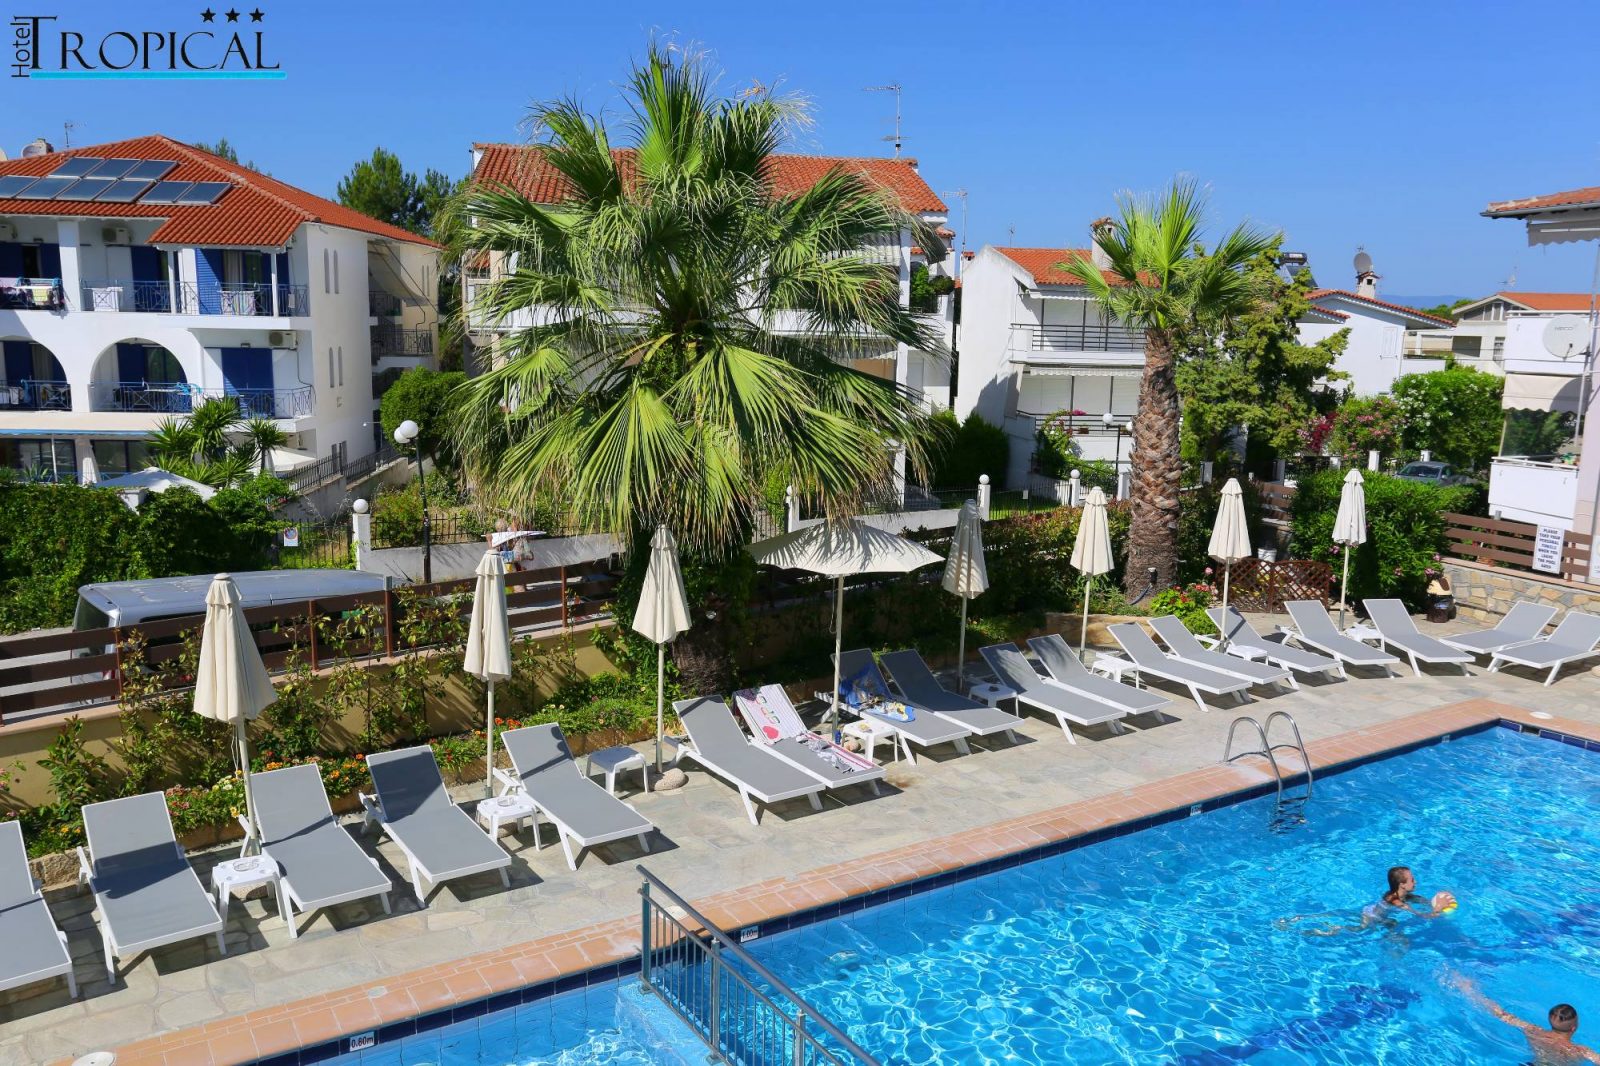 Grcka hoteli letovanje, Halkidiki, Hanioti,Tropical,ležaljke na bazenu